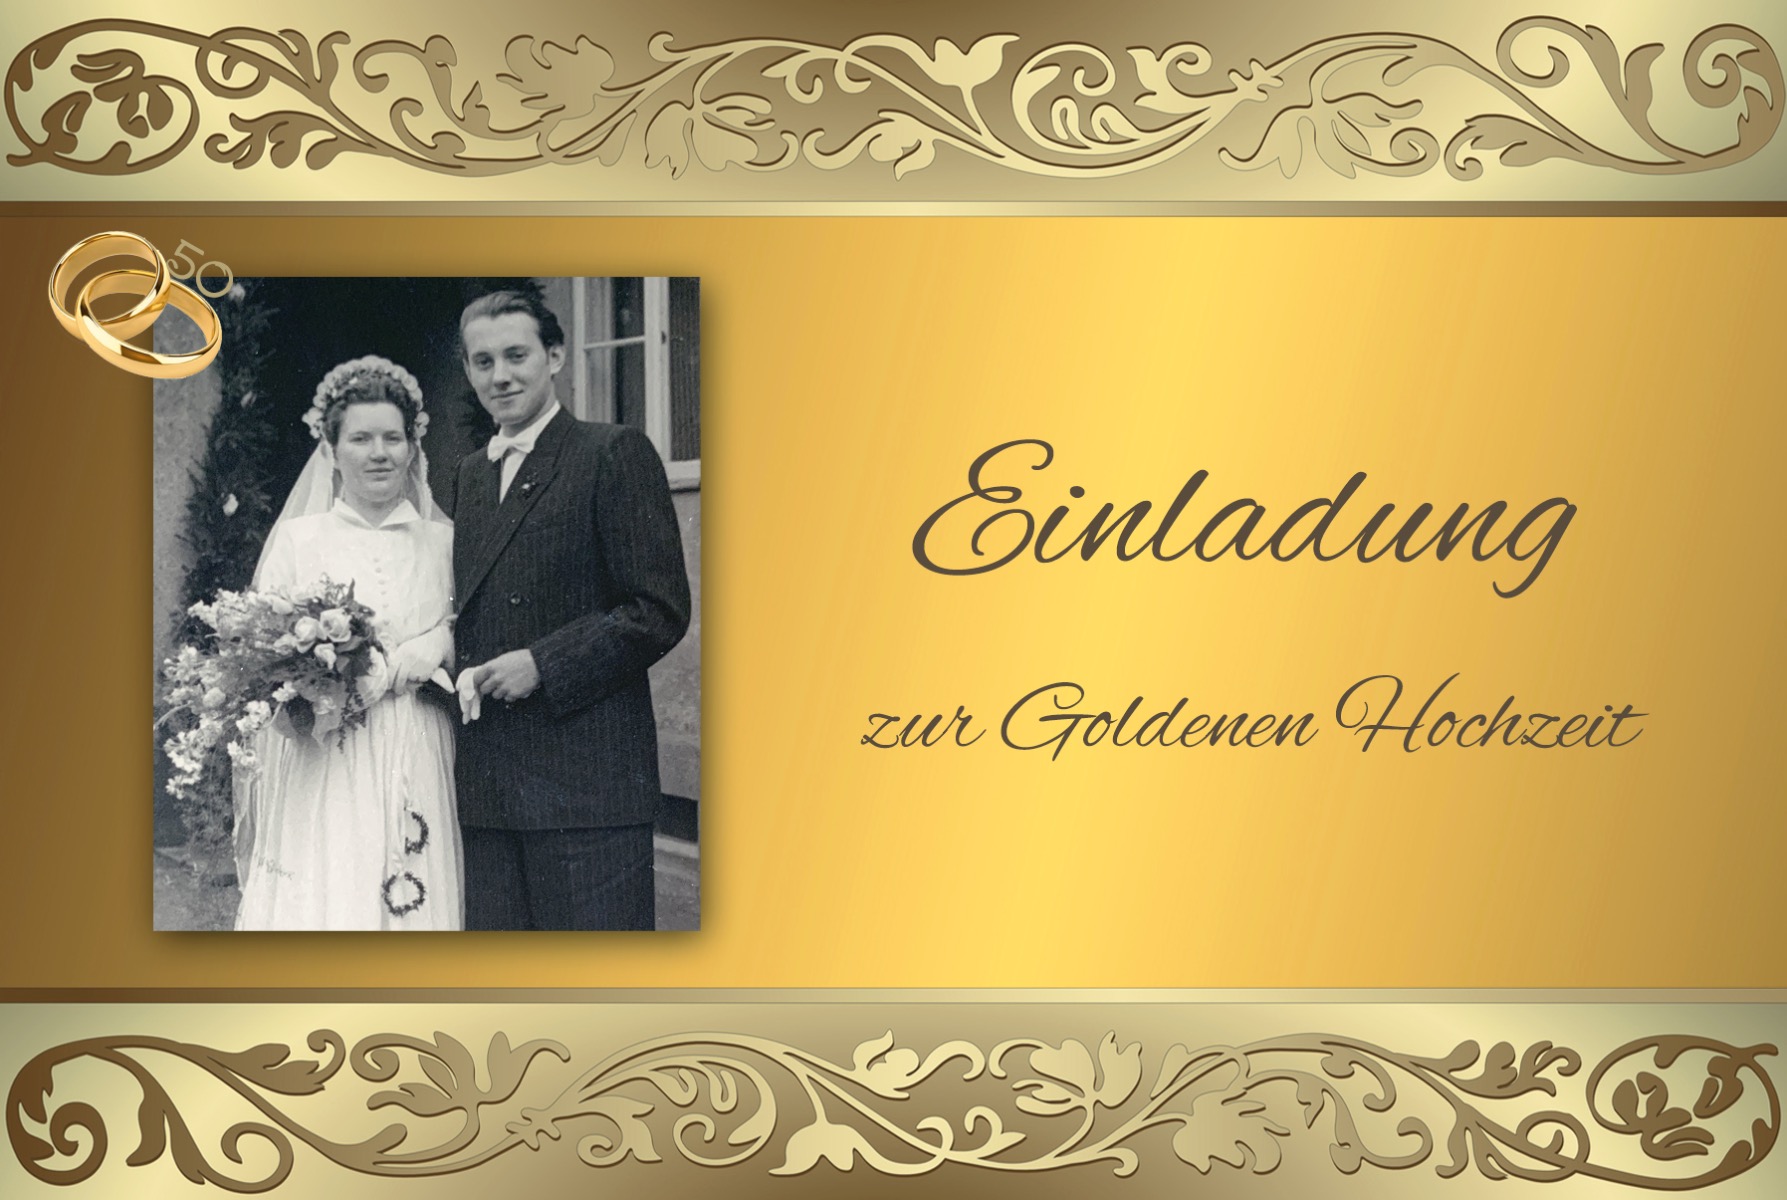 Einladungskarte zur Goldenen Hochzeit mit goldener Umrandung und Ringen